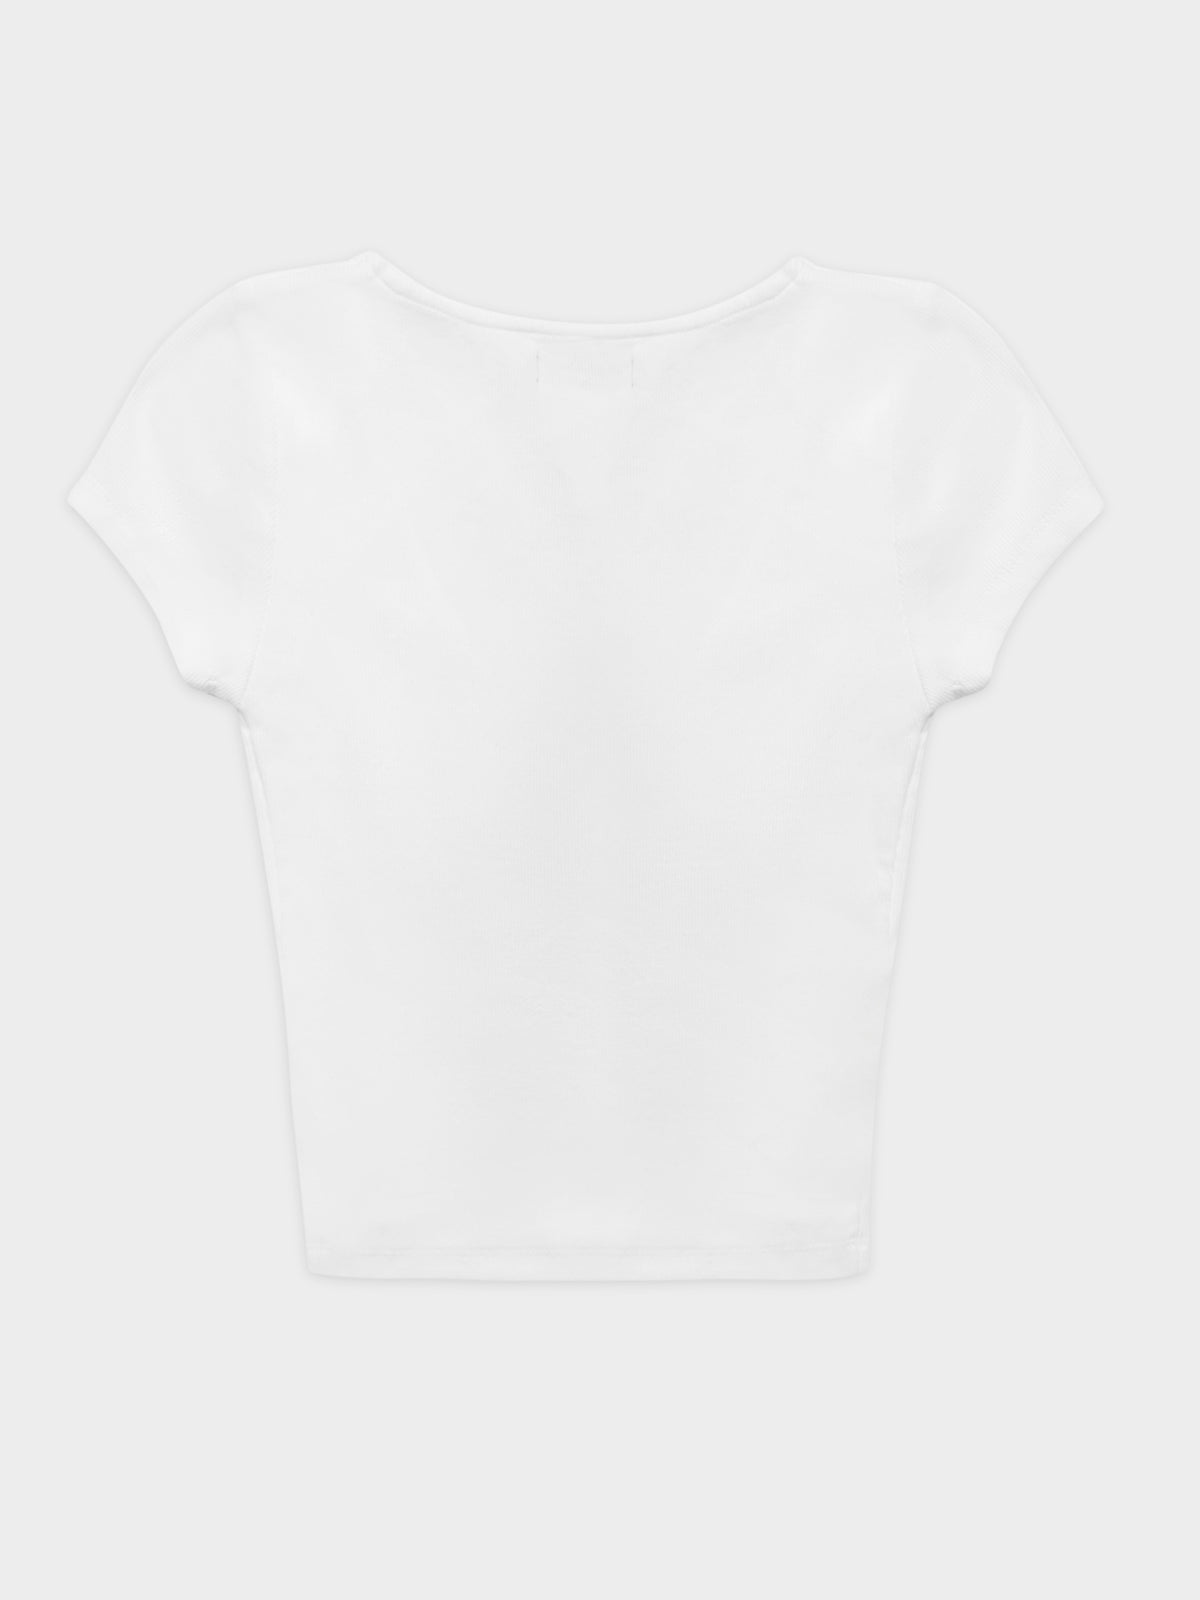 Tobie Twist T-Shirt in White